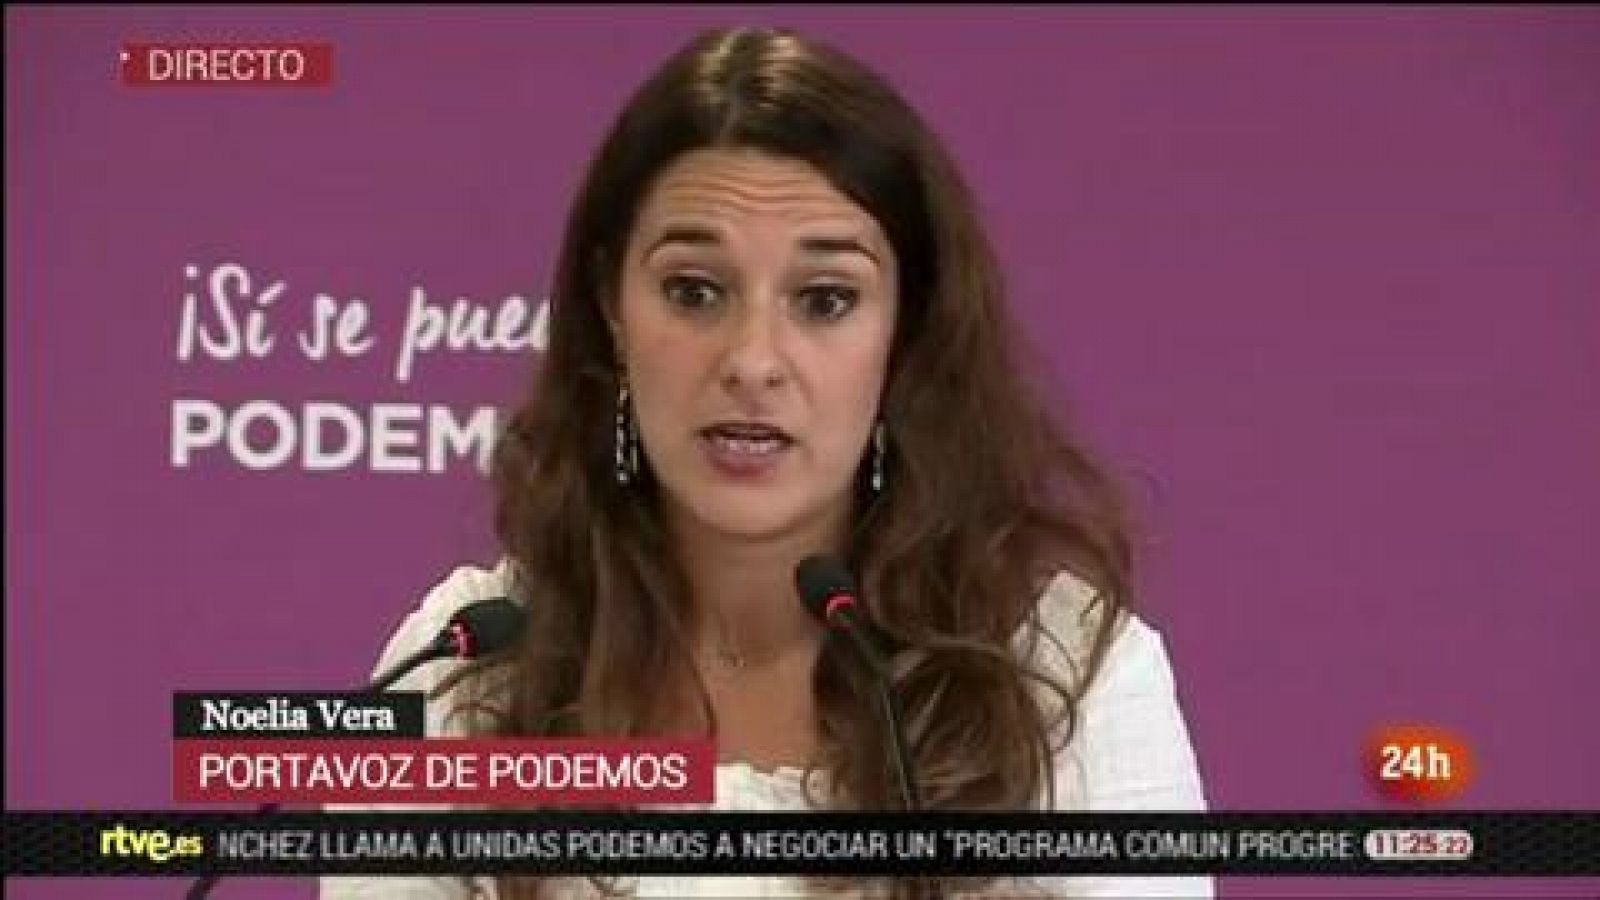 Podemos - Noelia Vera: "Un gobierno en solitario es inestable" - RTVE.es